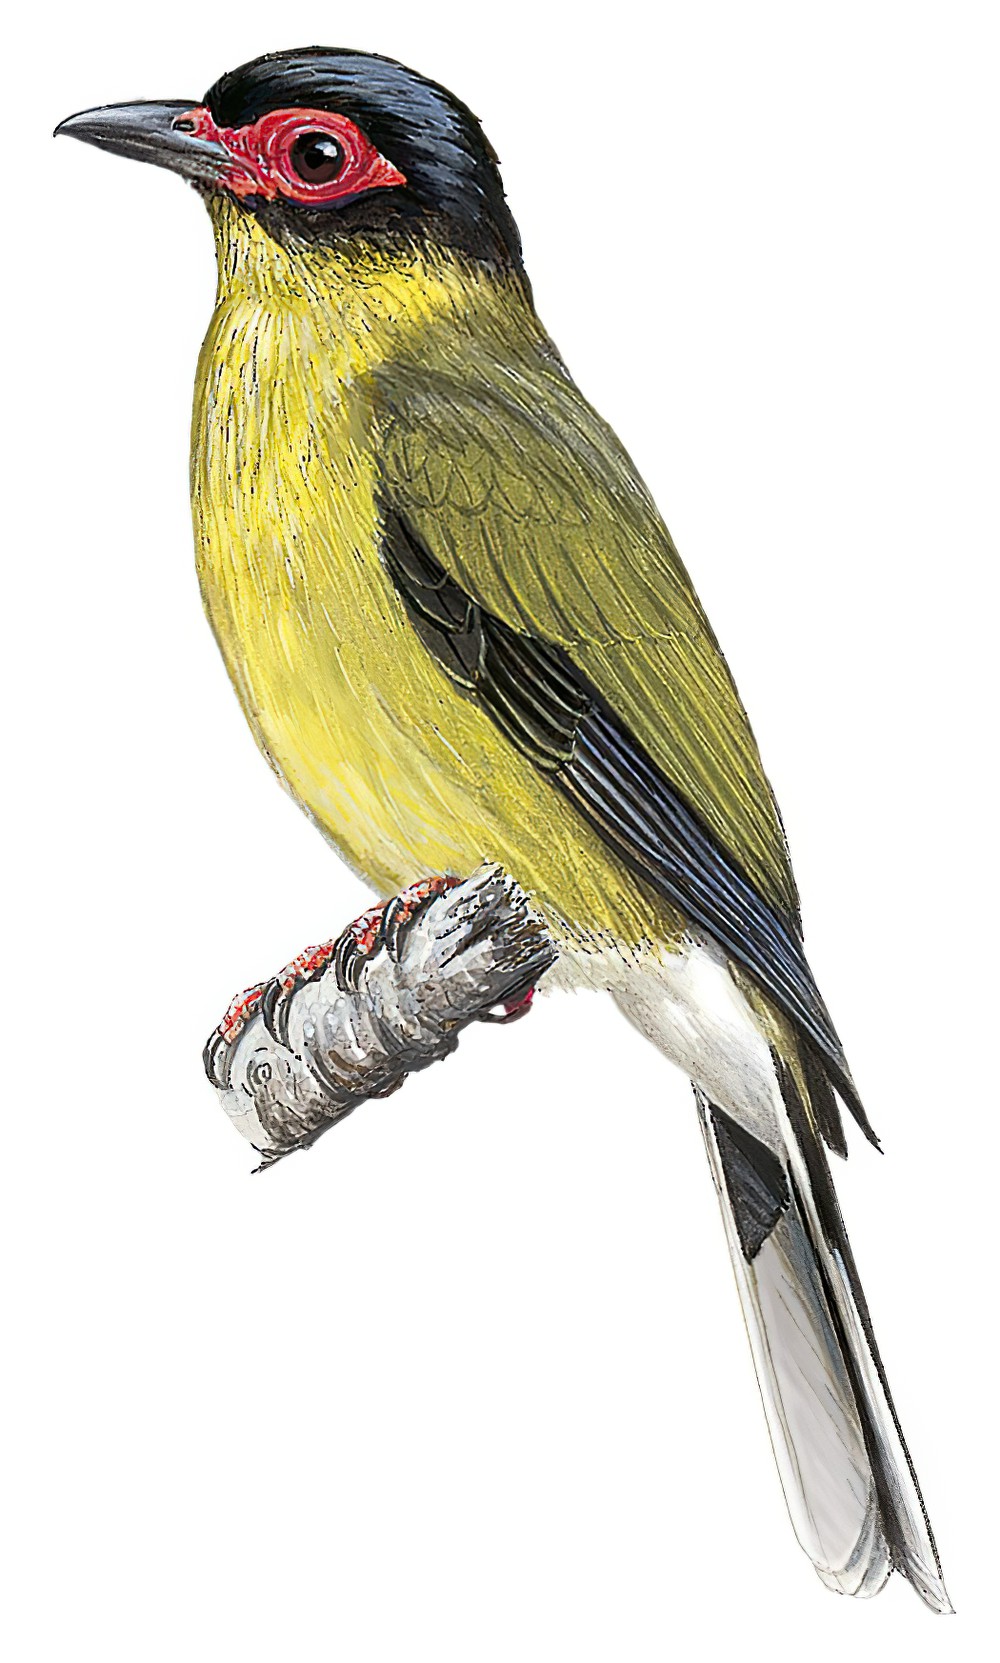 Australasian Figbird / Sphecotheres vieilloti